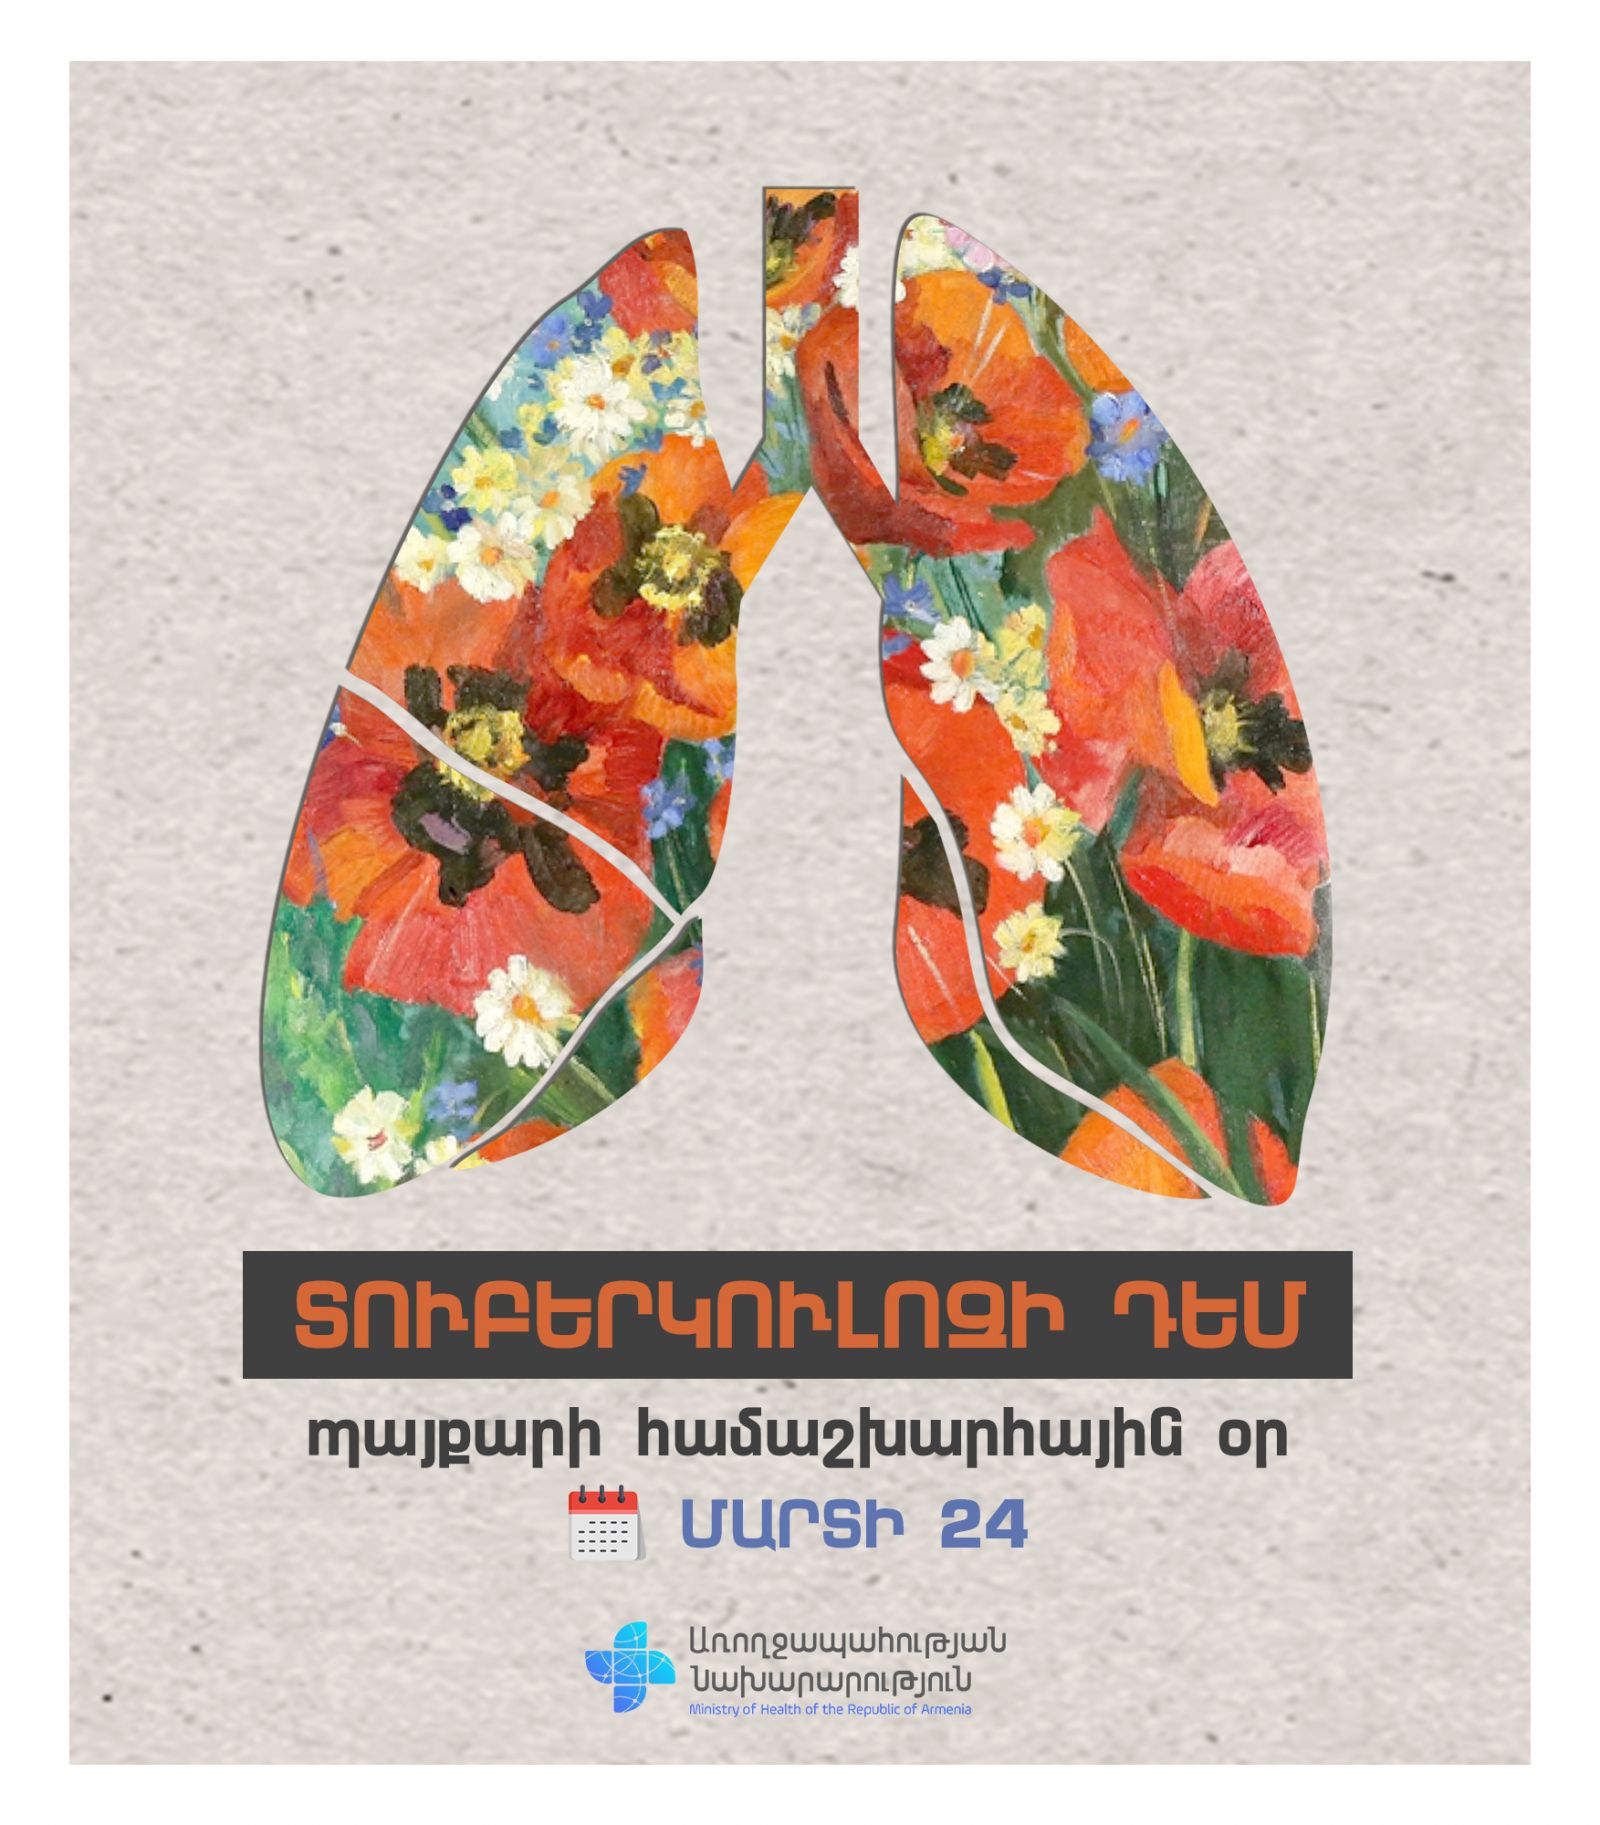 Pada tahun 2022, tercatat 472 kasus tuberkulosis aktif di Armenia